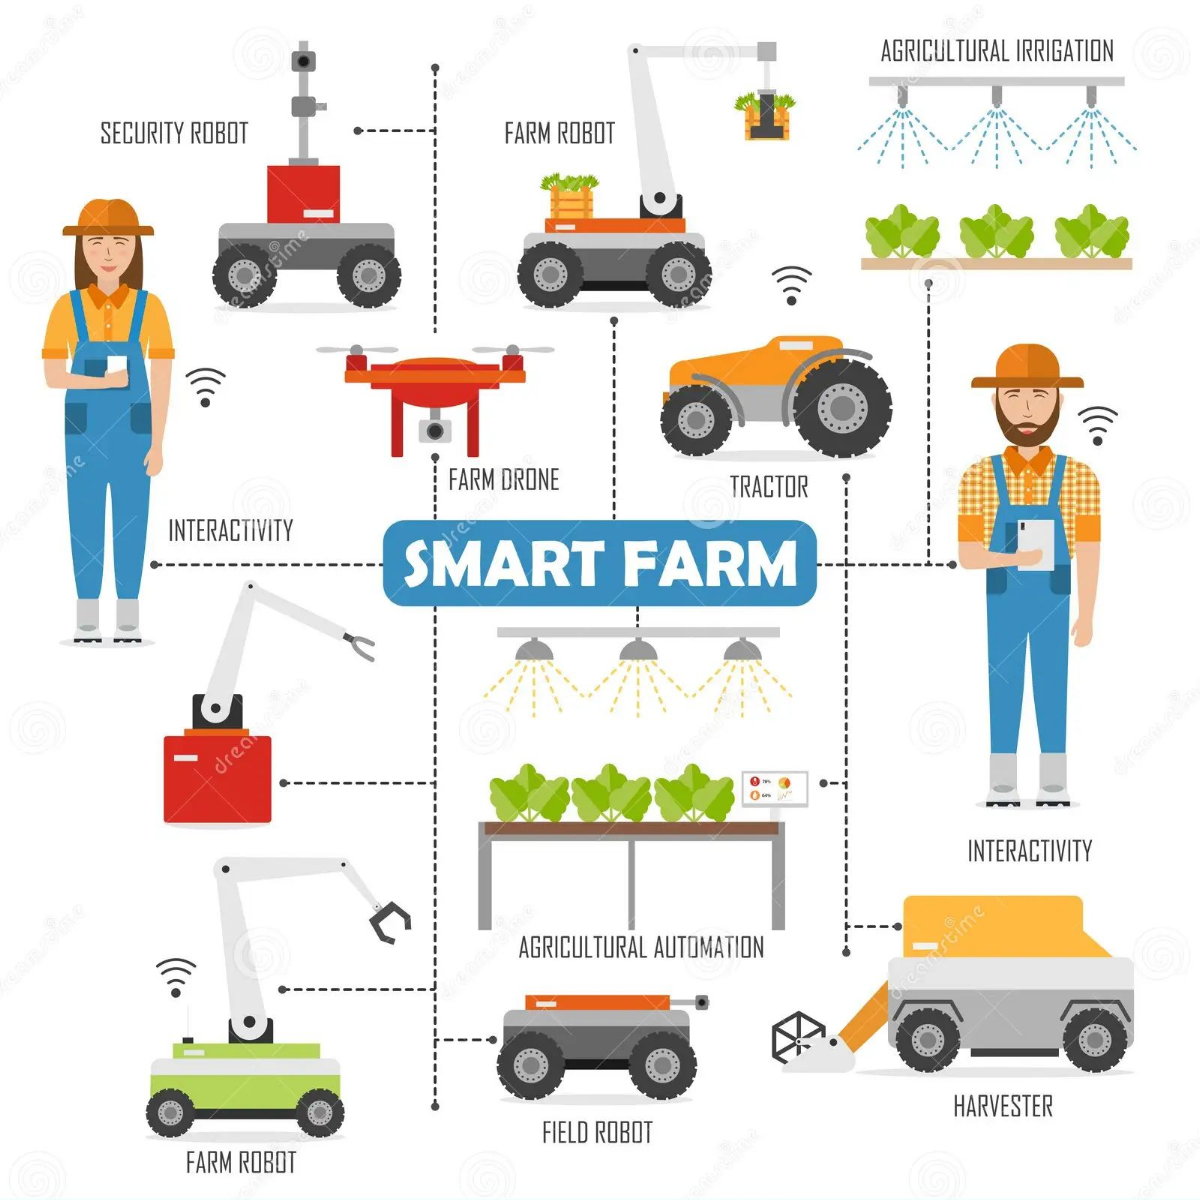 5 Maquinaria para automatizacion en agricultura robotica agrico